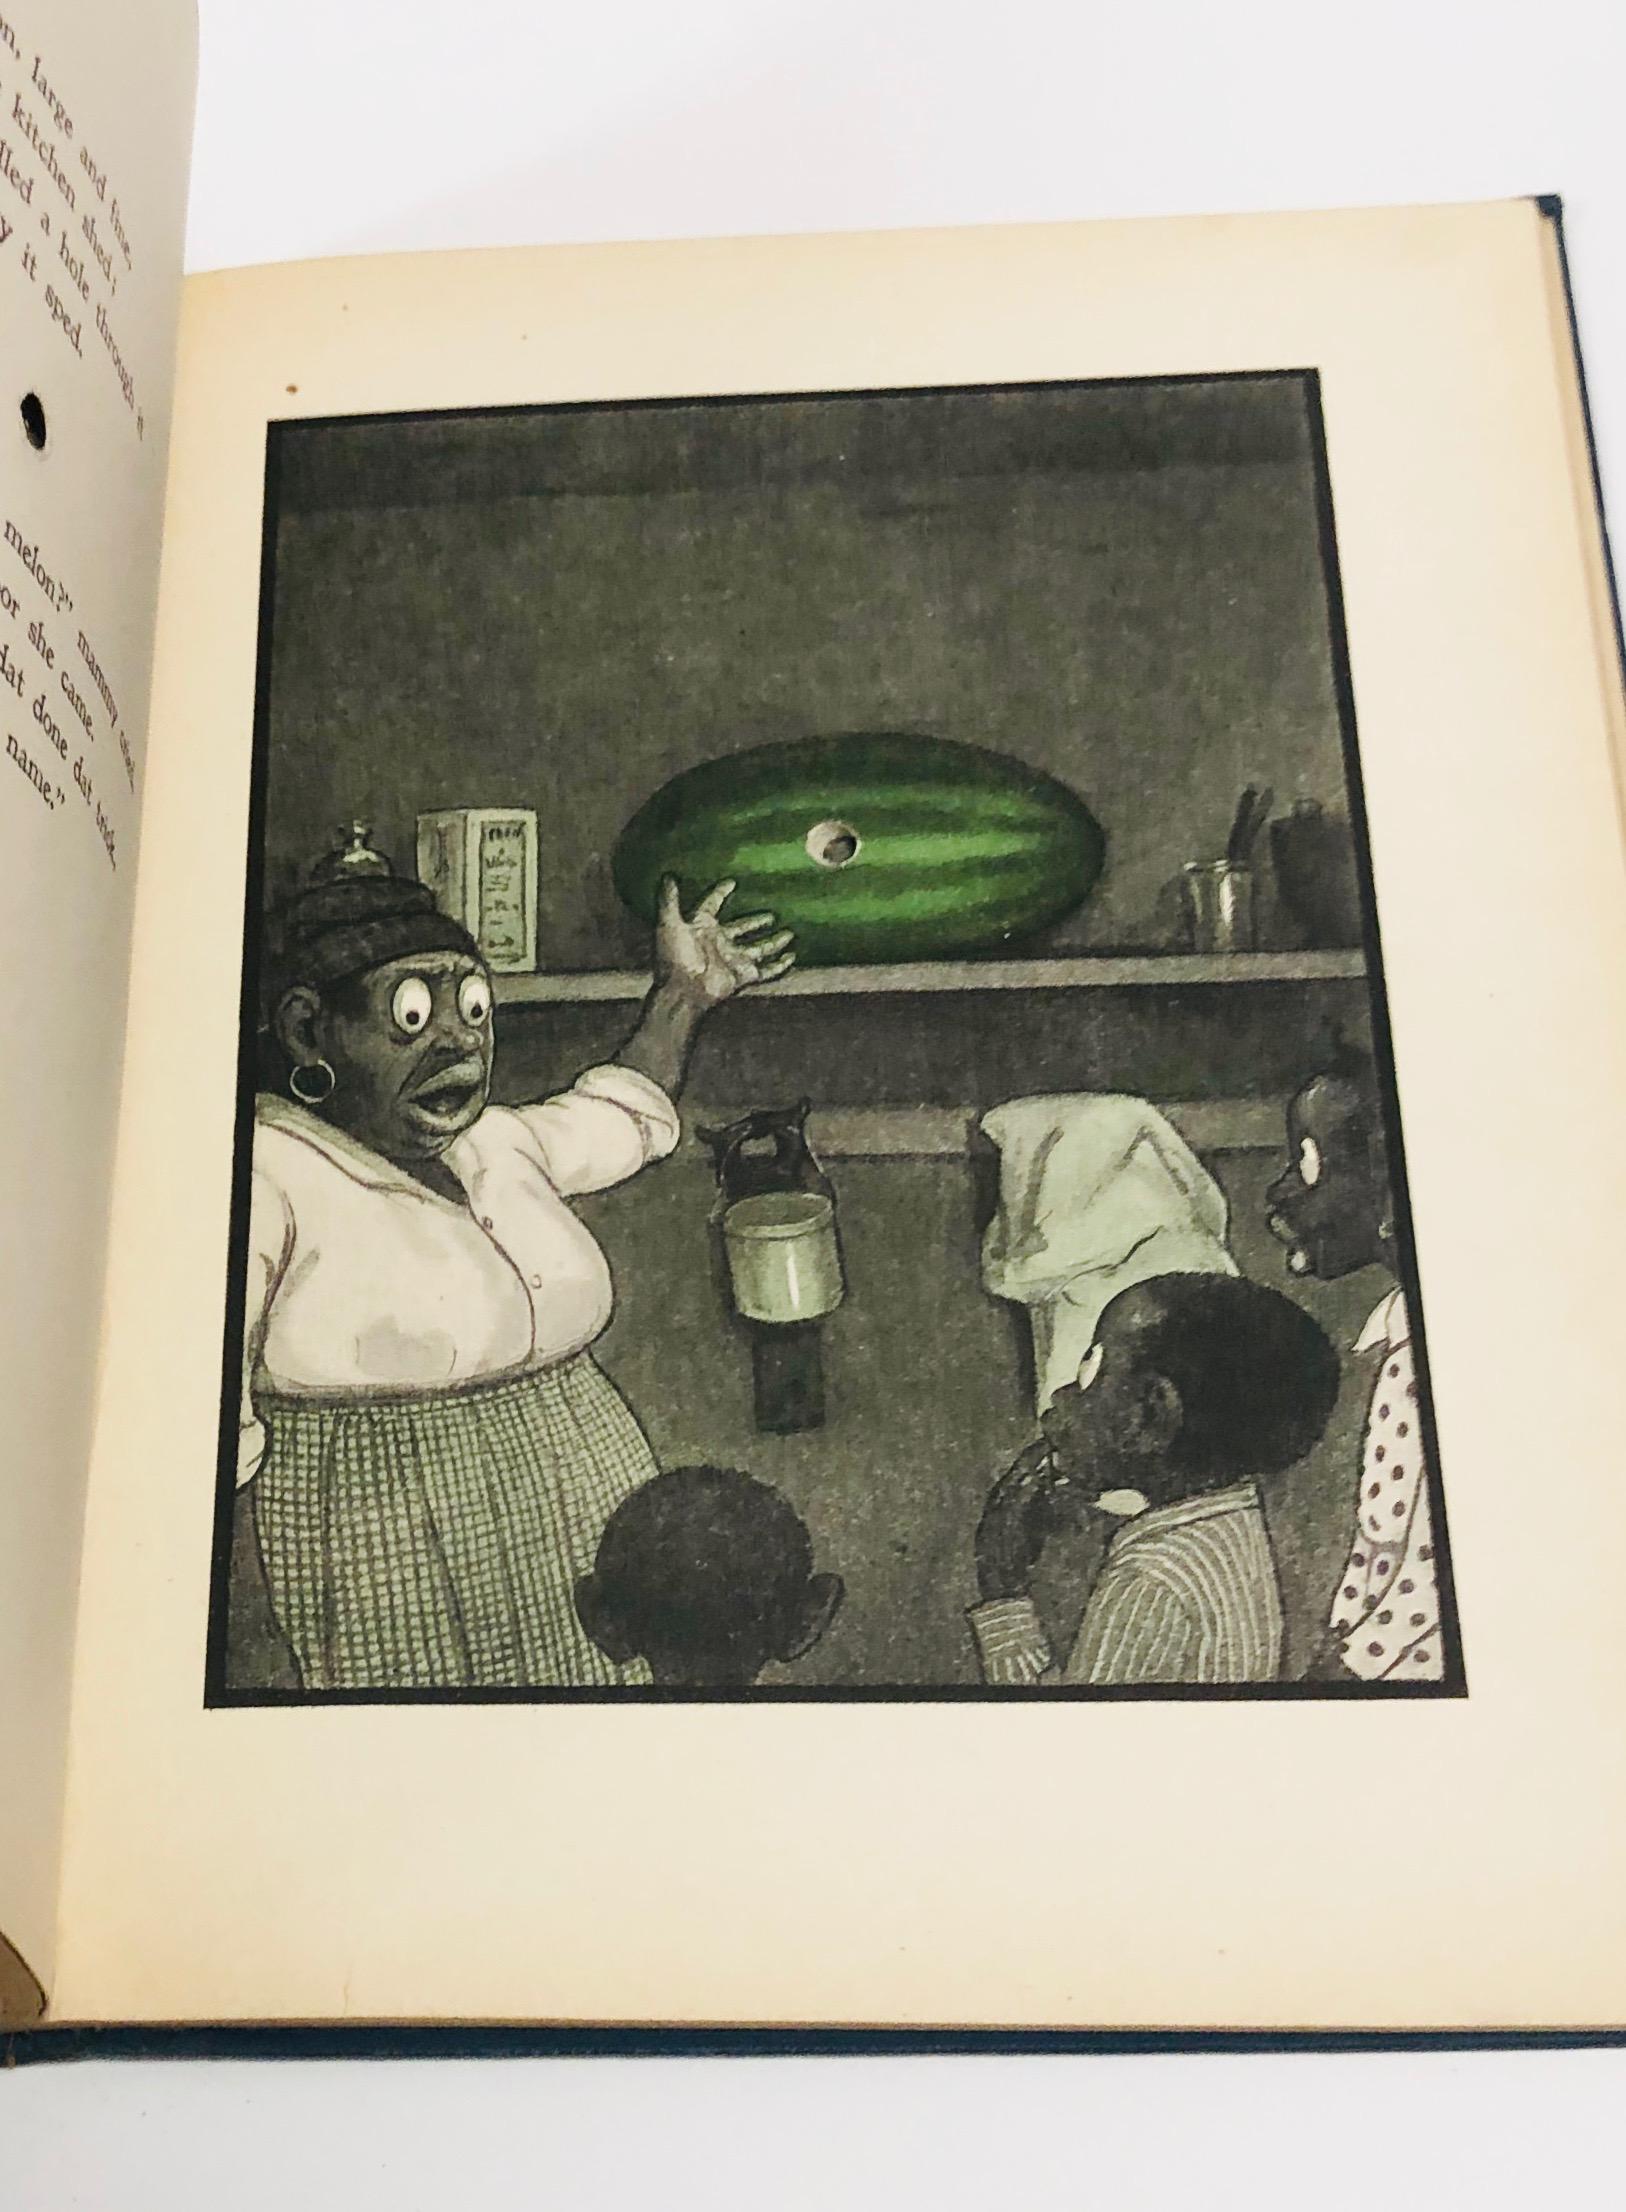 RAREST Antiquarian Children's Books - HOLE BOOK - SLANT BOOK by Peter Newell - CHILD SHOOTS GUN!